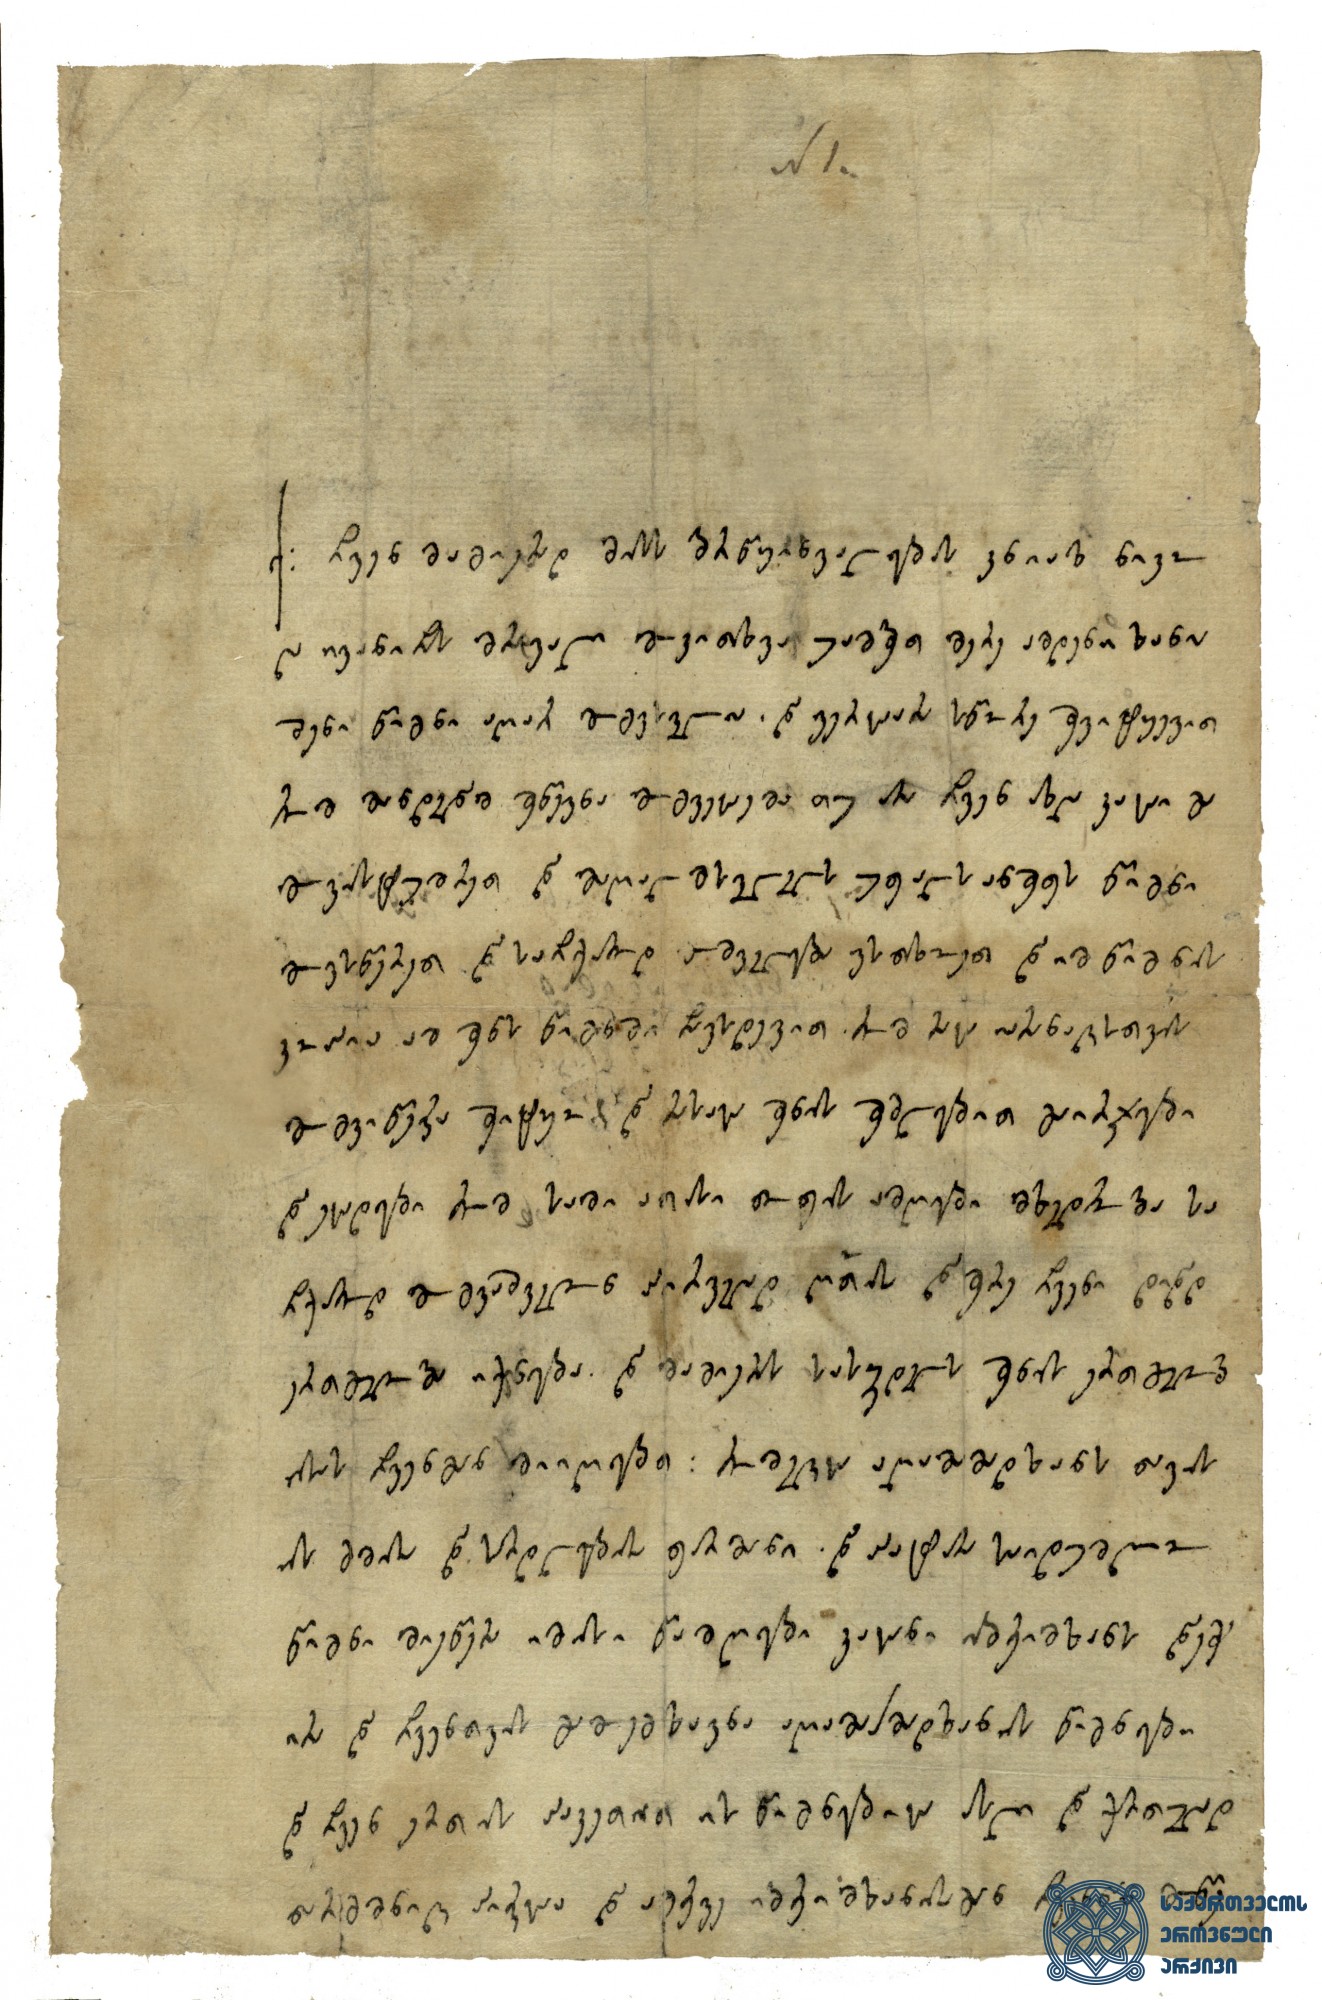 წერილი ერეკლე II-ისა ნიკოლოზ ივანეს ძეს აღა-მაჰმად ხანის მოსალოდნელი შემოსევის შესახებ. <br> 1795 წ. 29 აგვისტო, <br>
ითხოვს სამი ათასი „თოფის ამღები“ მეომრის მიშველებას. ატყობინებს აღა-მაჰმად ხანის საიდუმლო წერილების იბრეიმ ხანის მიერ ხელში ჩაგდებისა და მისთვის გადაცემის შესახებ.